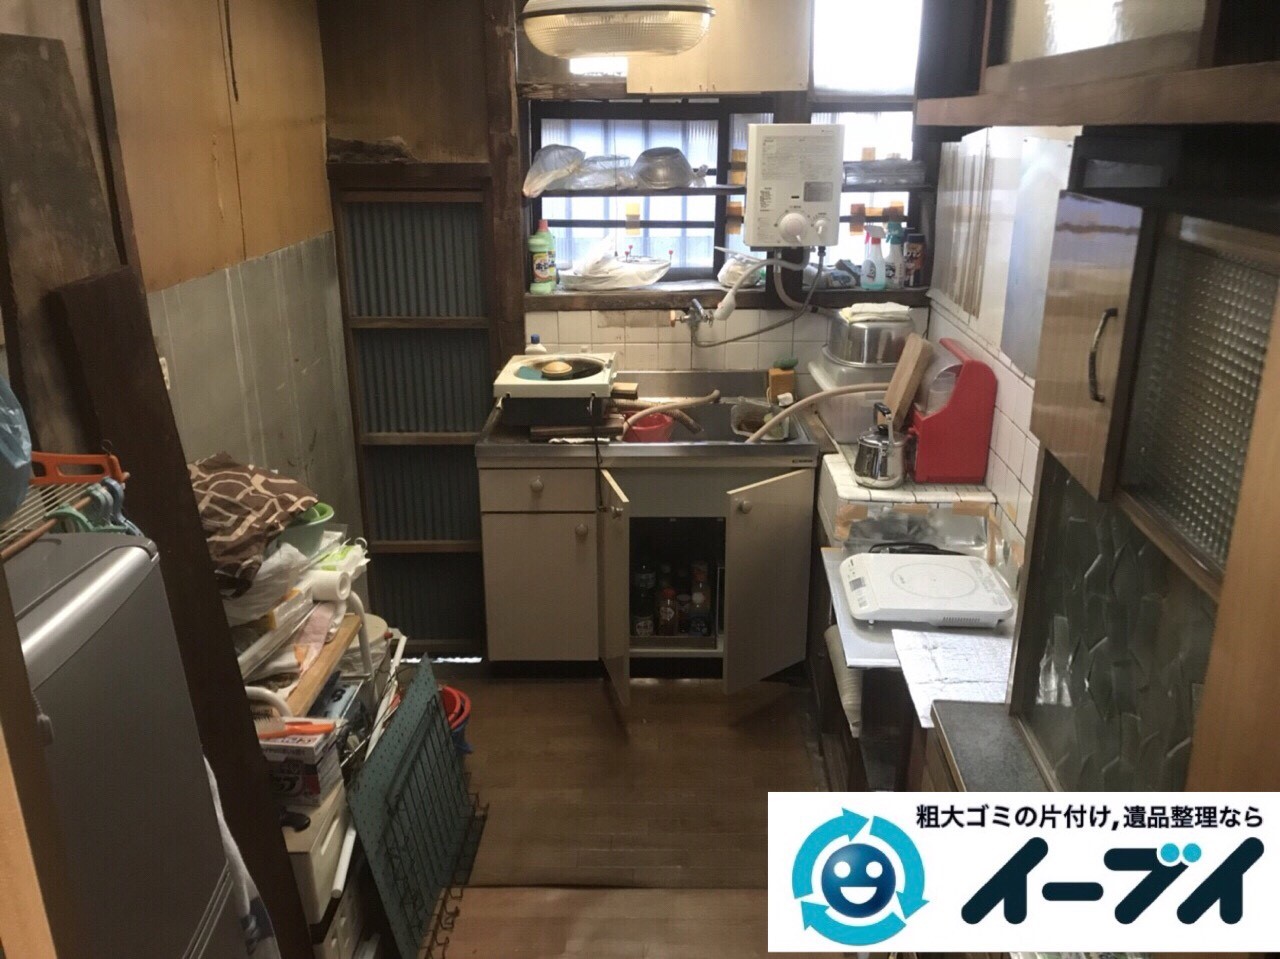 2018年4月20日大阪府大阪市浪速区で台所の生活用品や家具などの粗大ゴミの不用品回収。写真2